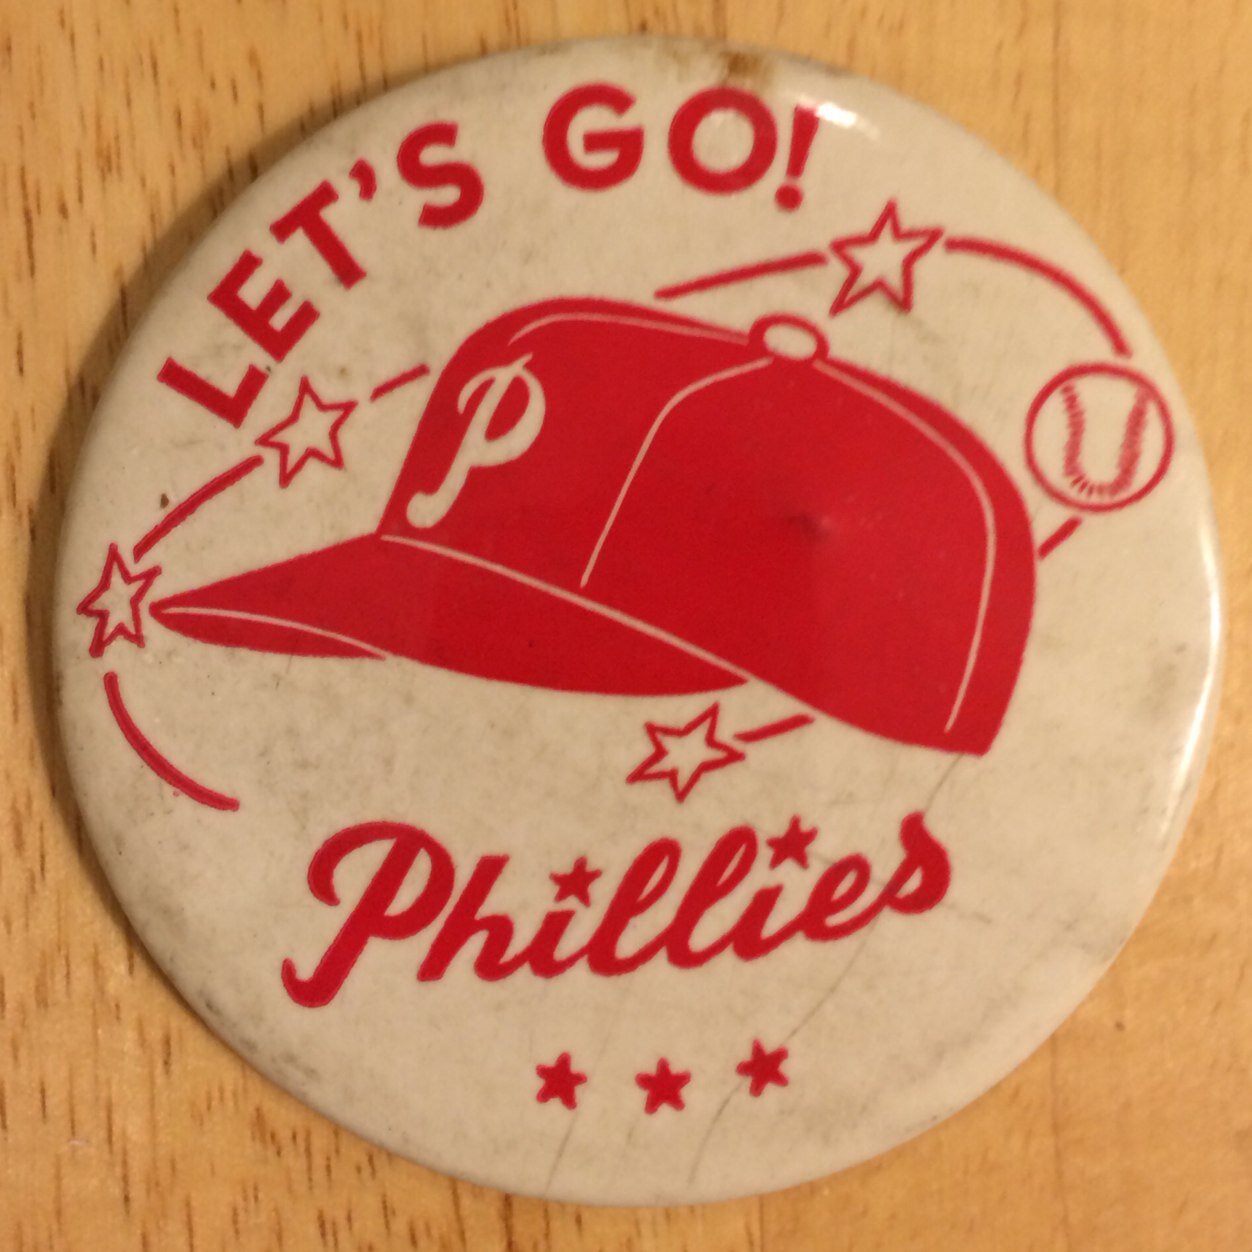 1964 Phillies